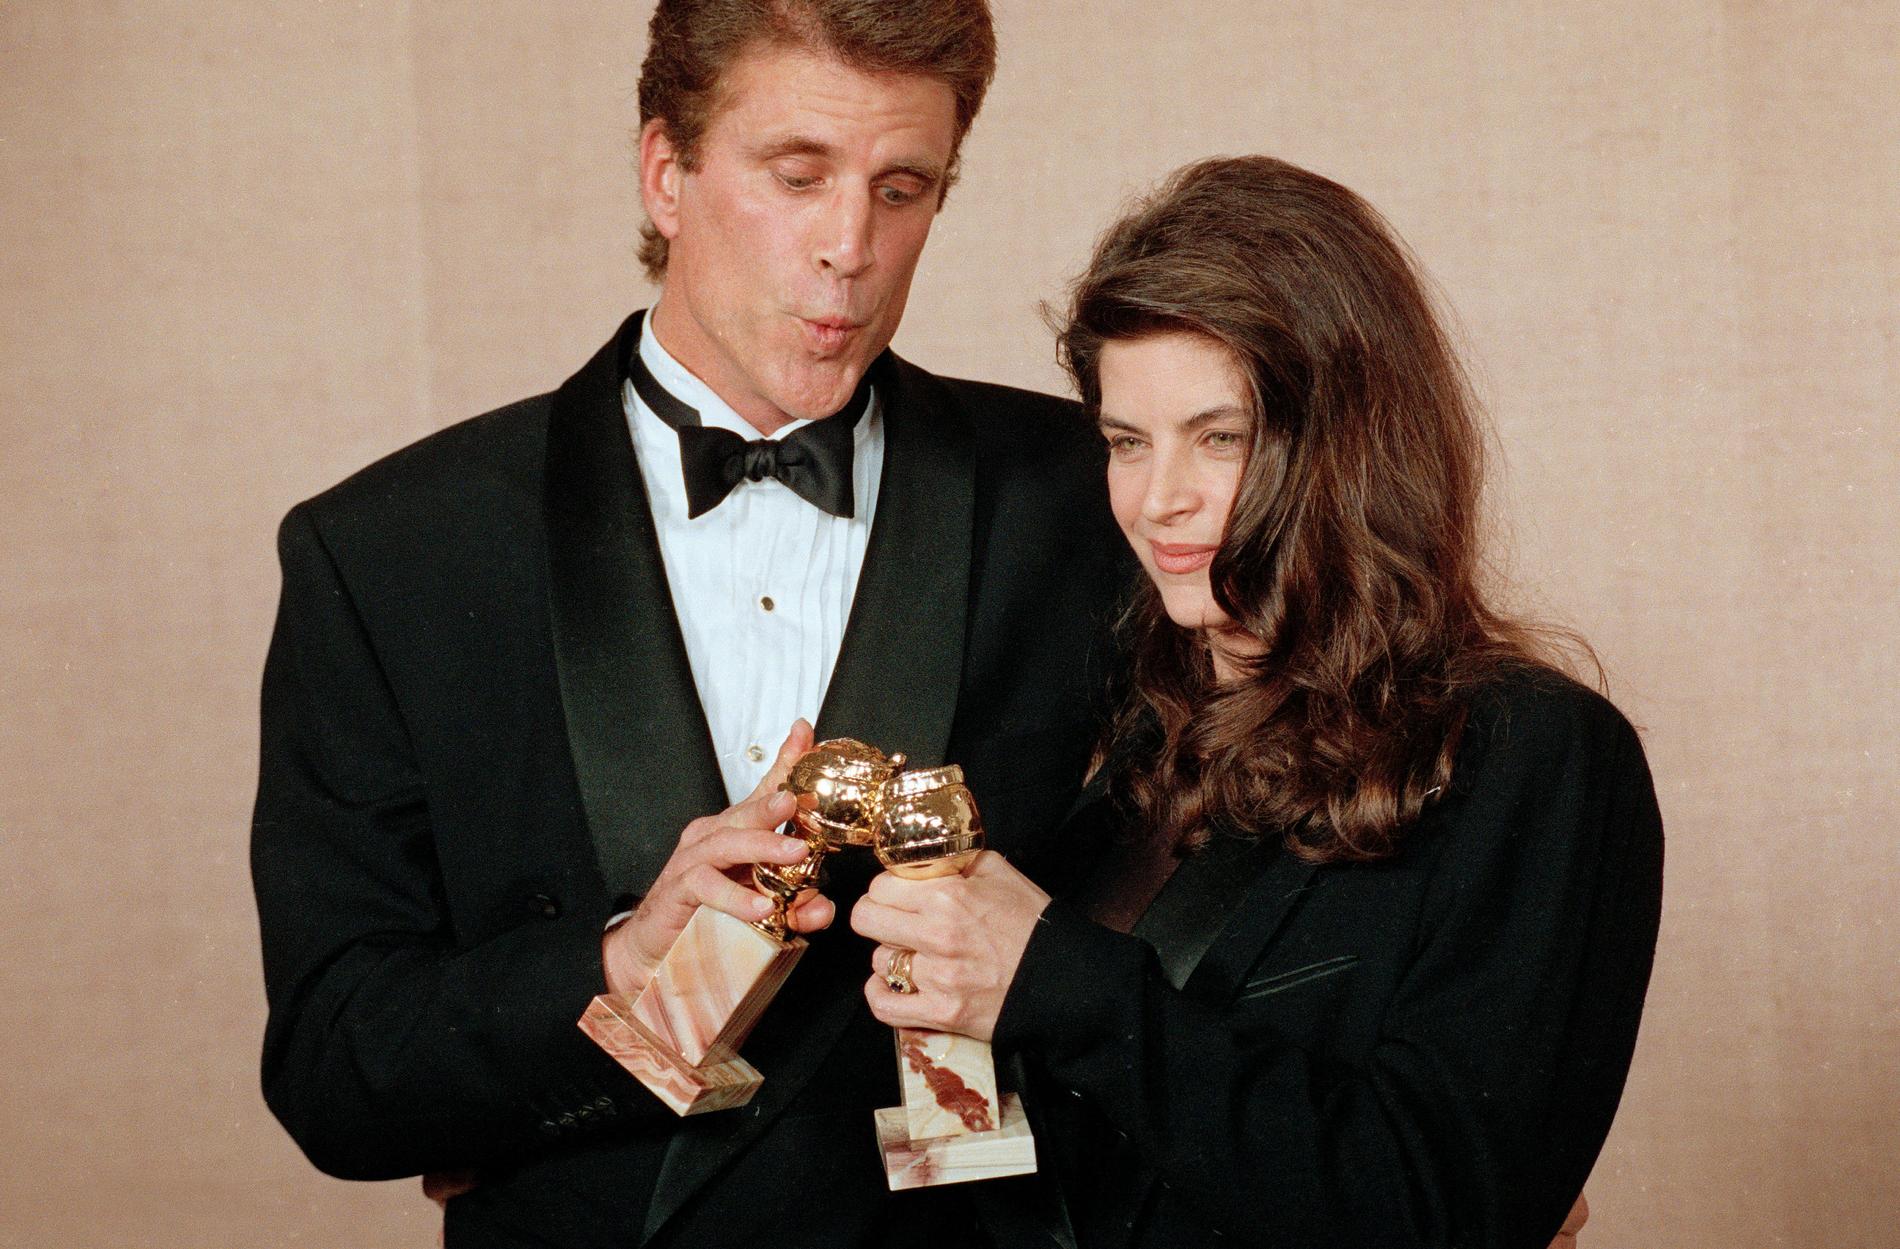  Kirstie Alley tillsammans med Ted Danson på Golden Globe-galan 1991 då de vann pris bästa kvinnliga huvudroll respektive bästa skådespelare i en tv-komedi.